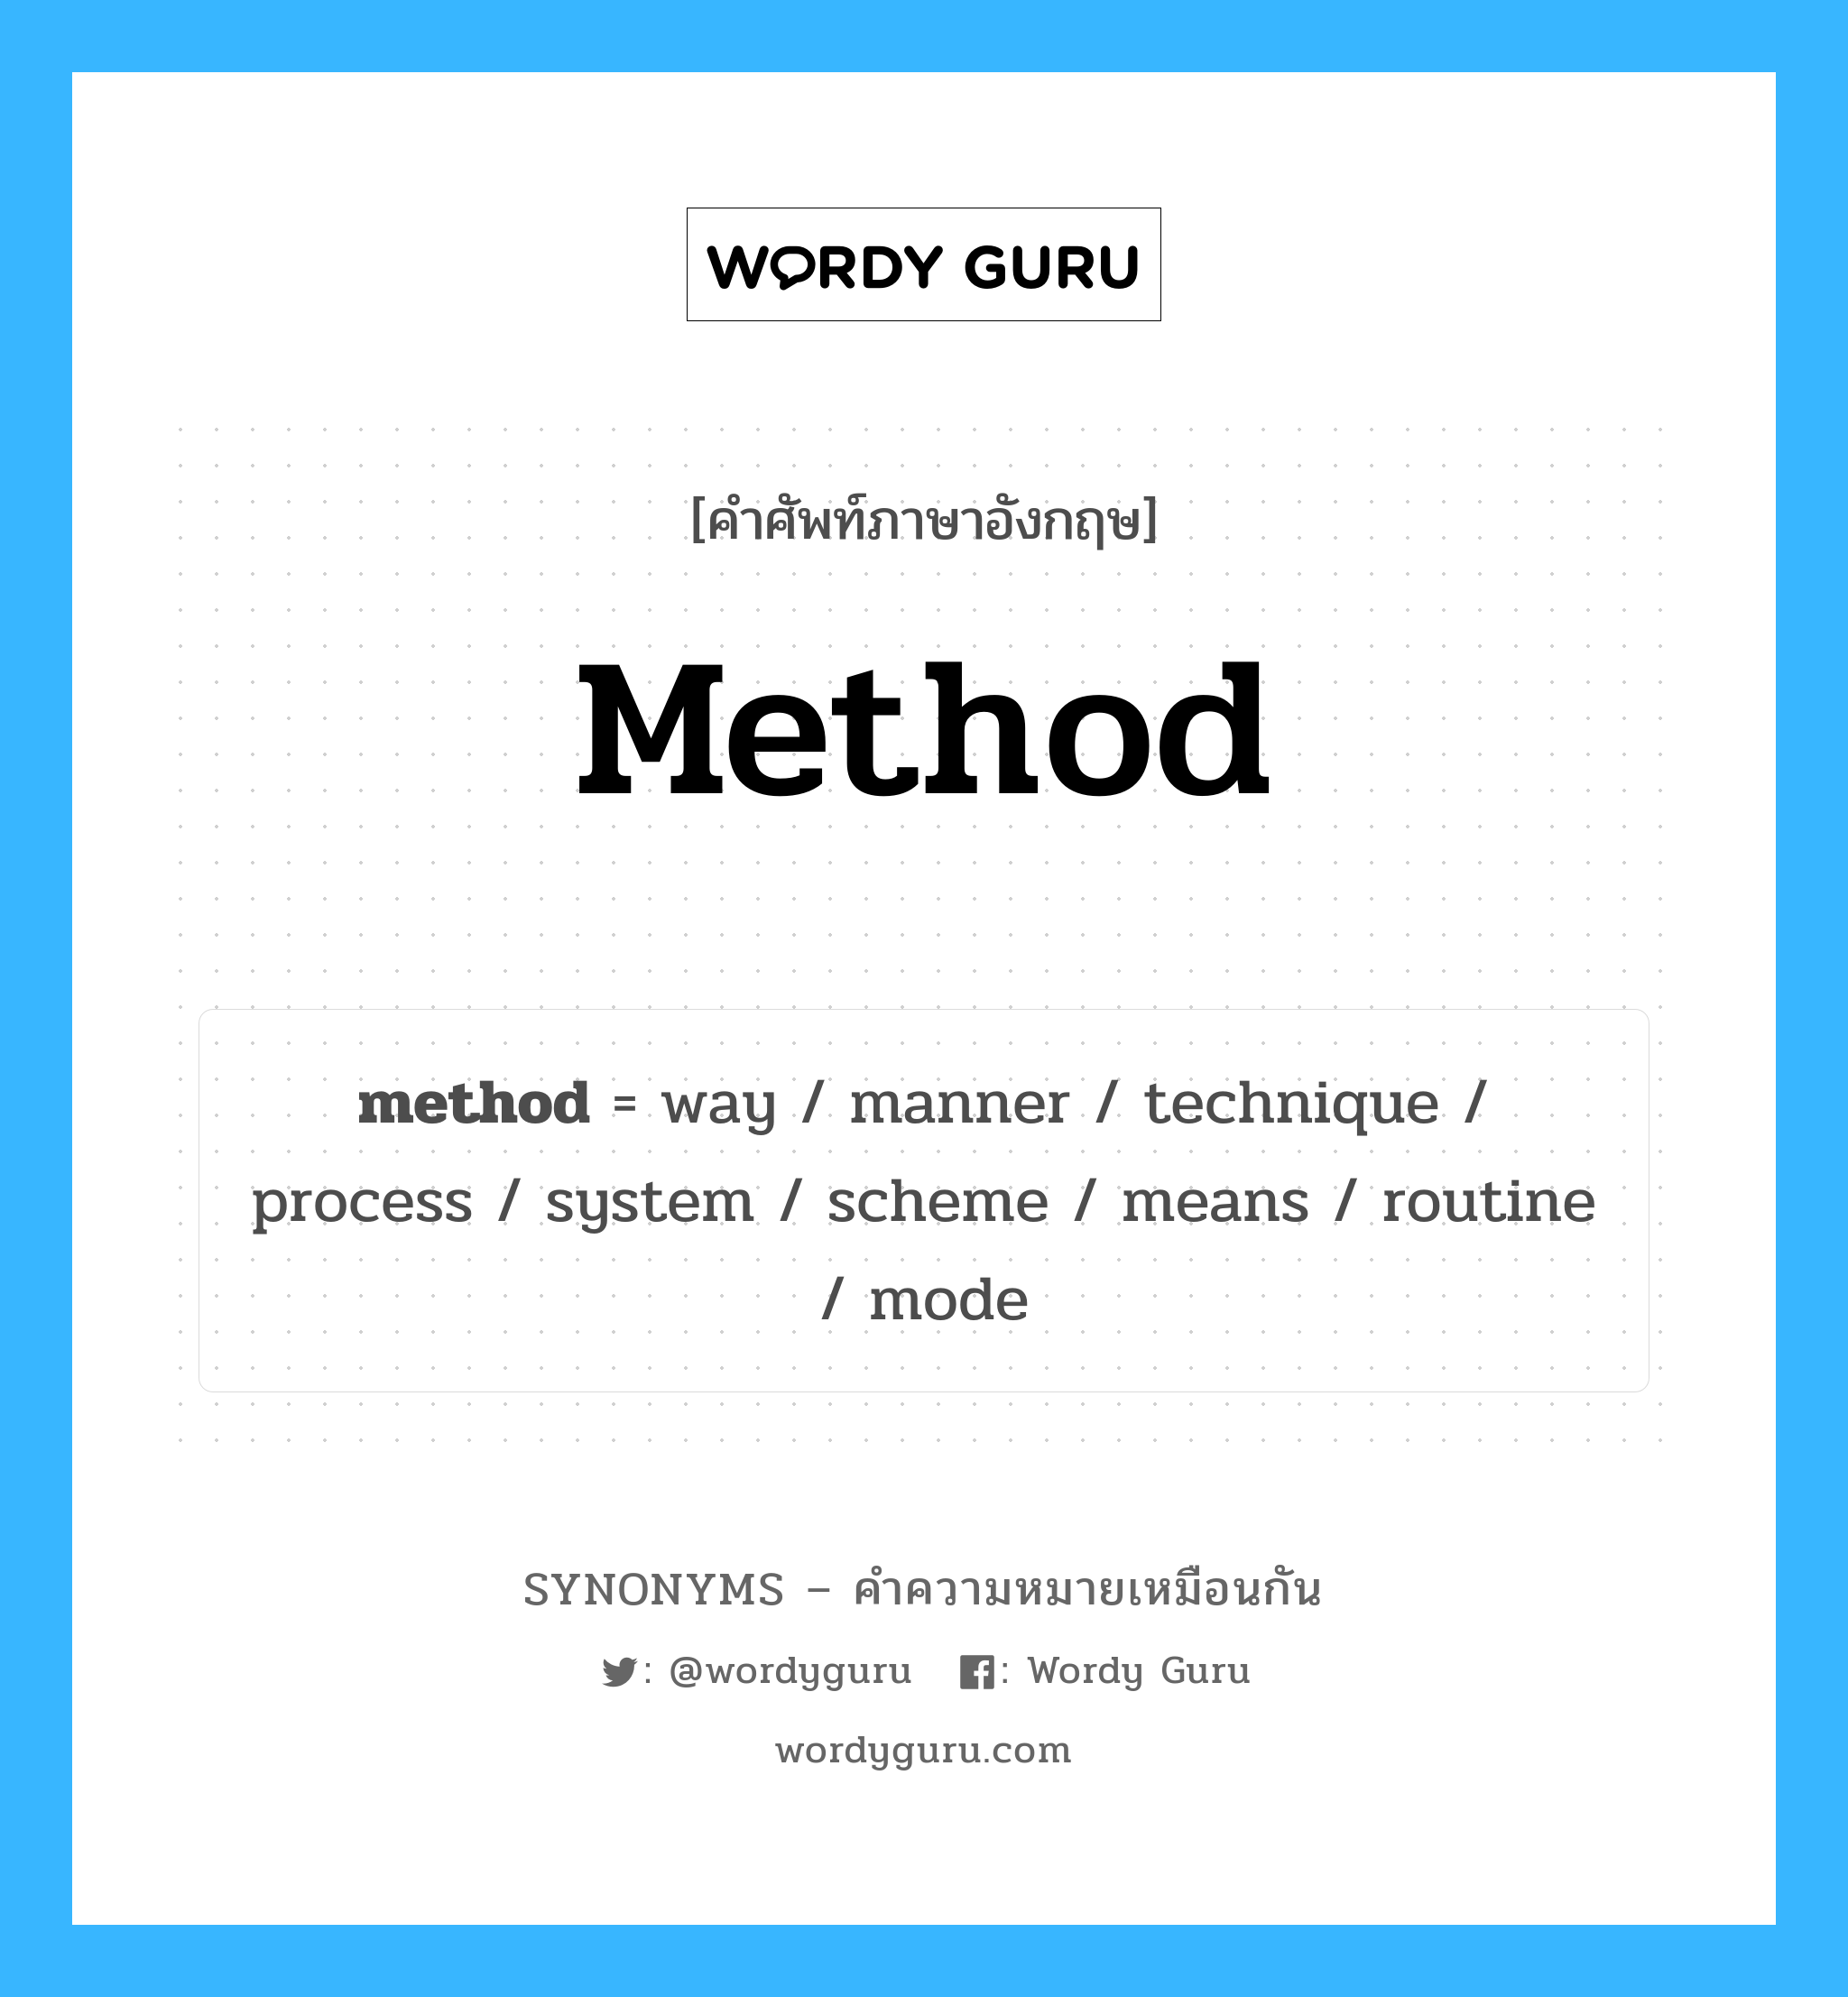 process เป็นหนึ่งใน method และมีคำอื่น ๆ อีกดังนี้, คำศัพท์ภาษาอังกฤษ process ความหมายคล้ายกันกับ method แปลว่า กระบวนการ หมวด method